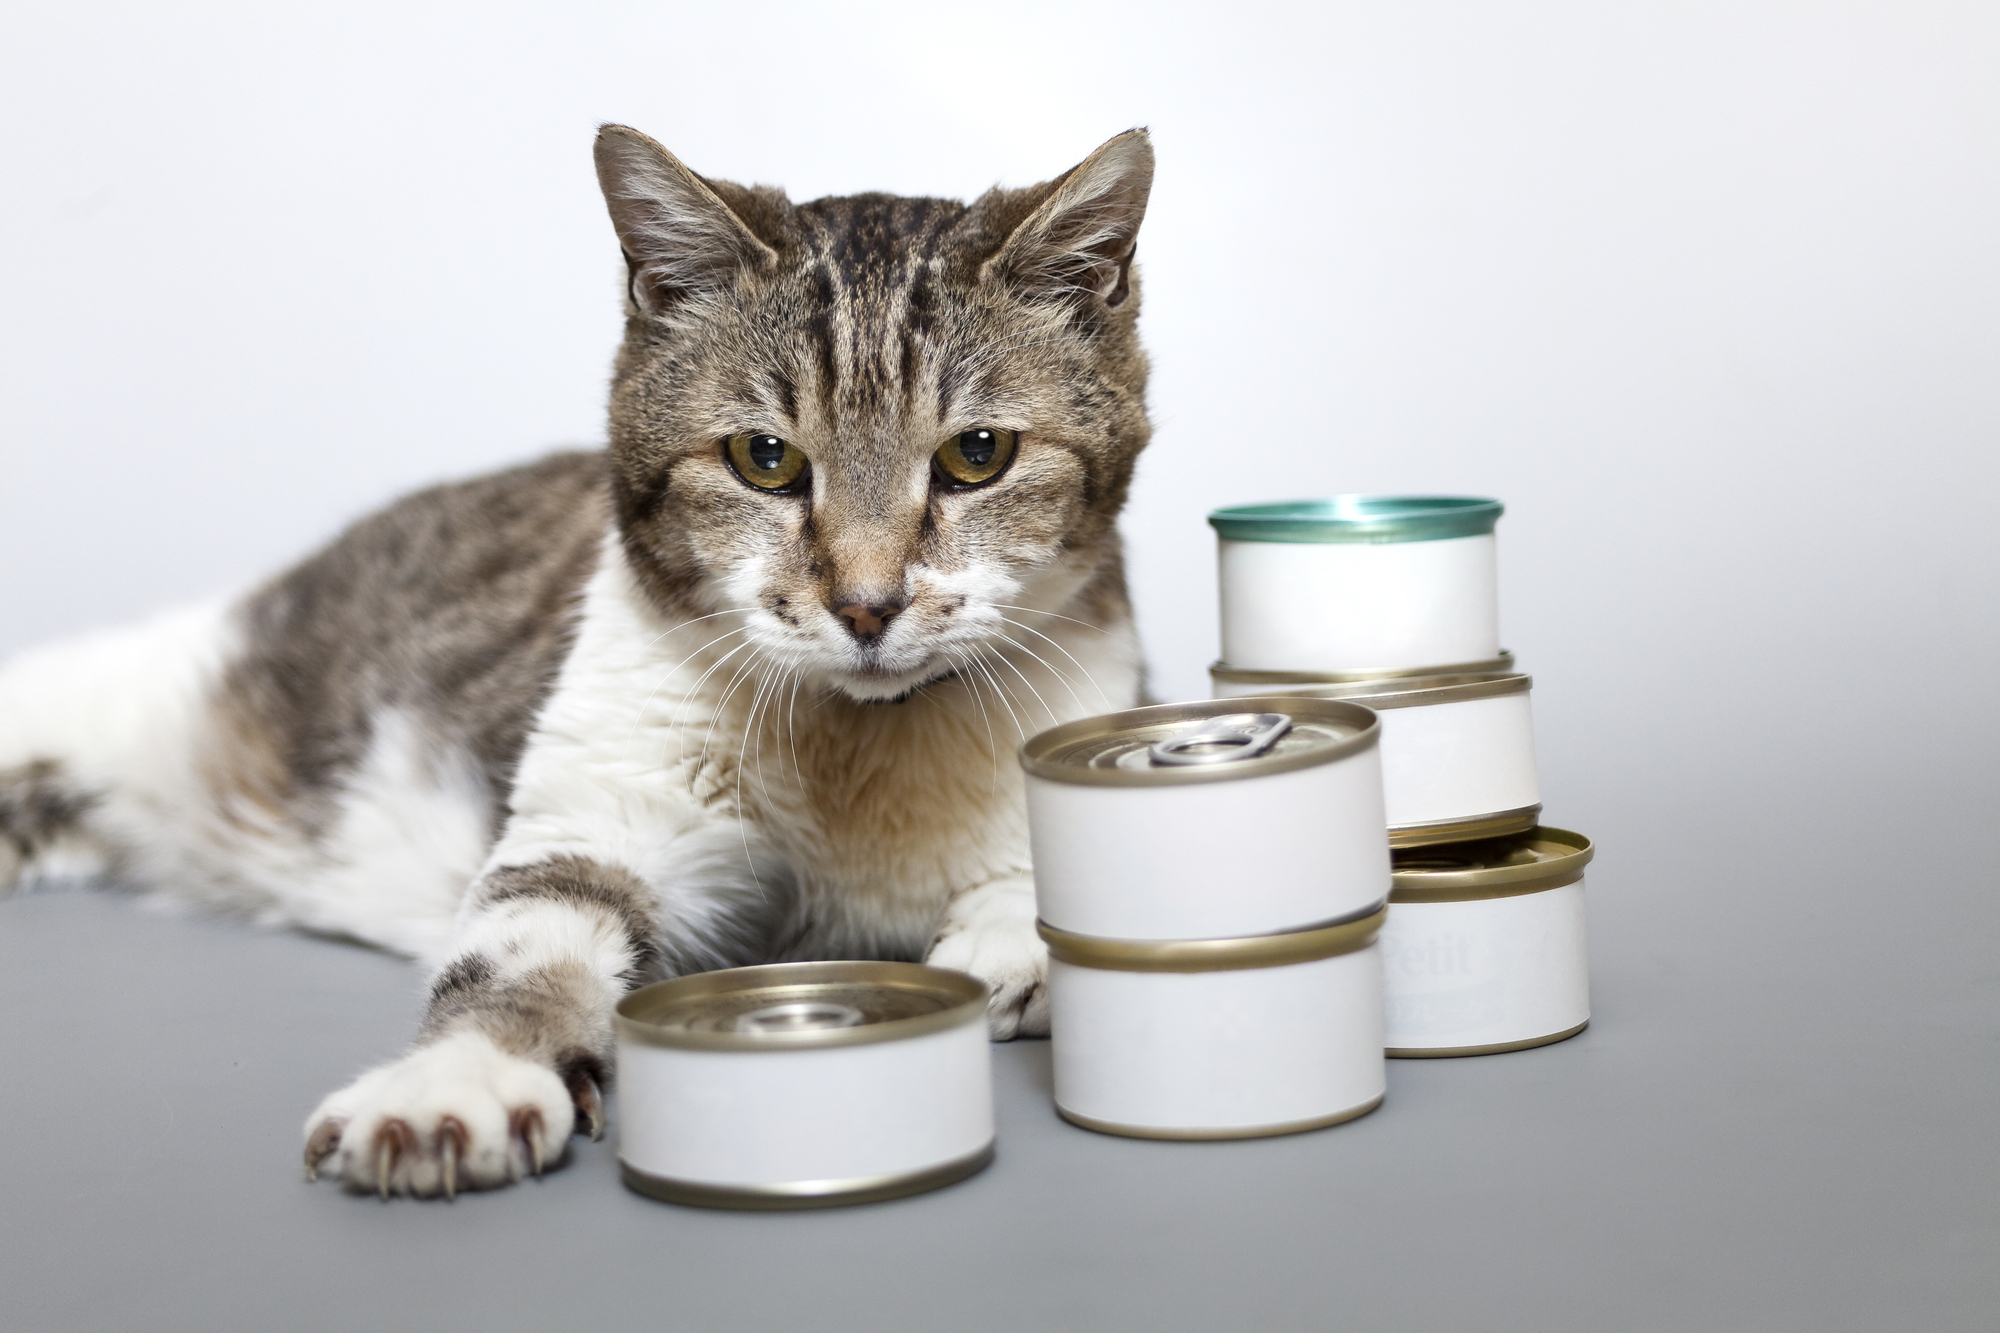 愛猫においしい食事を手作り 市販のツナ缶をそのままあげない理由とは Petpet Life